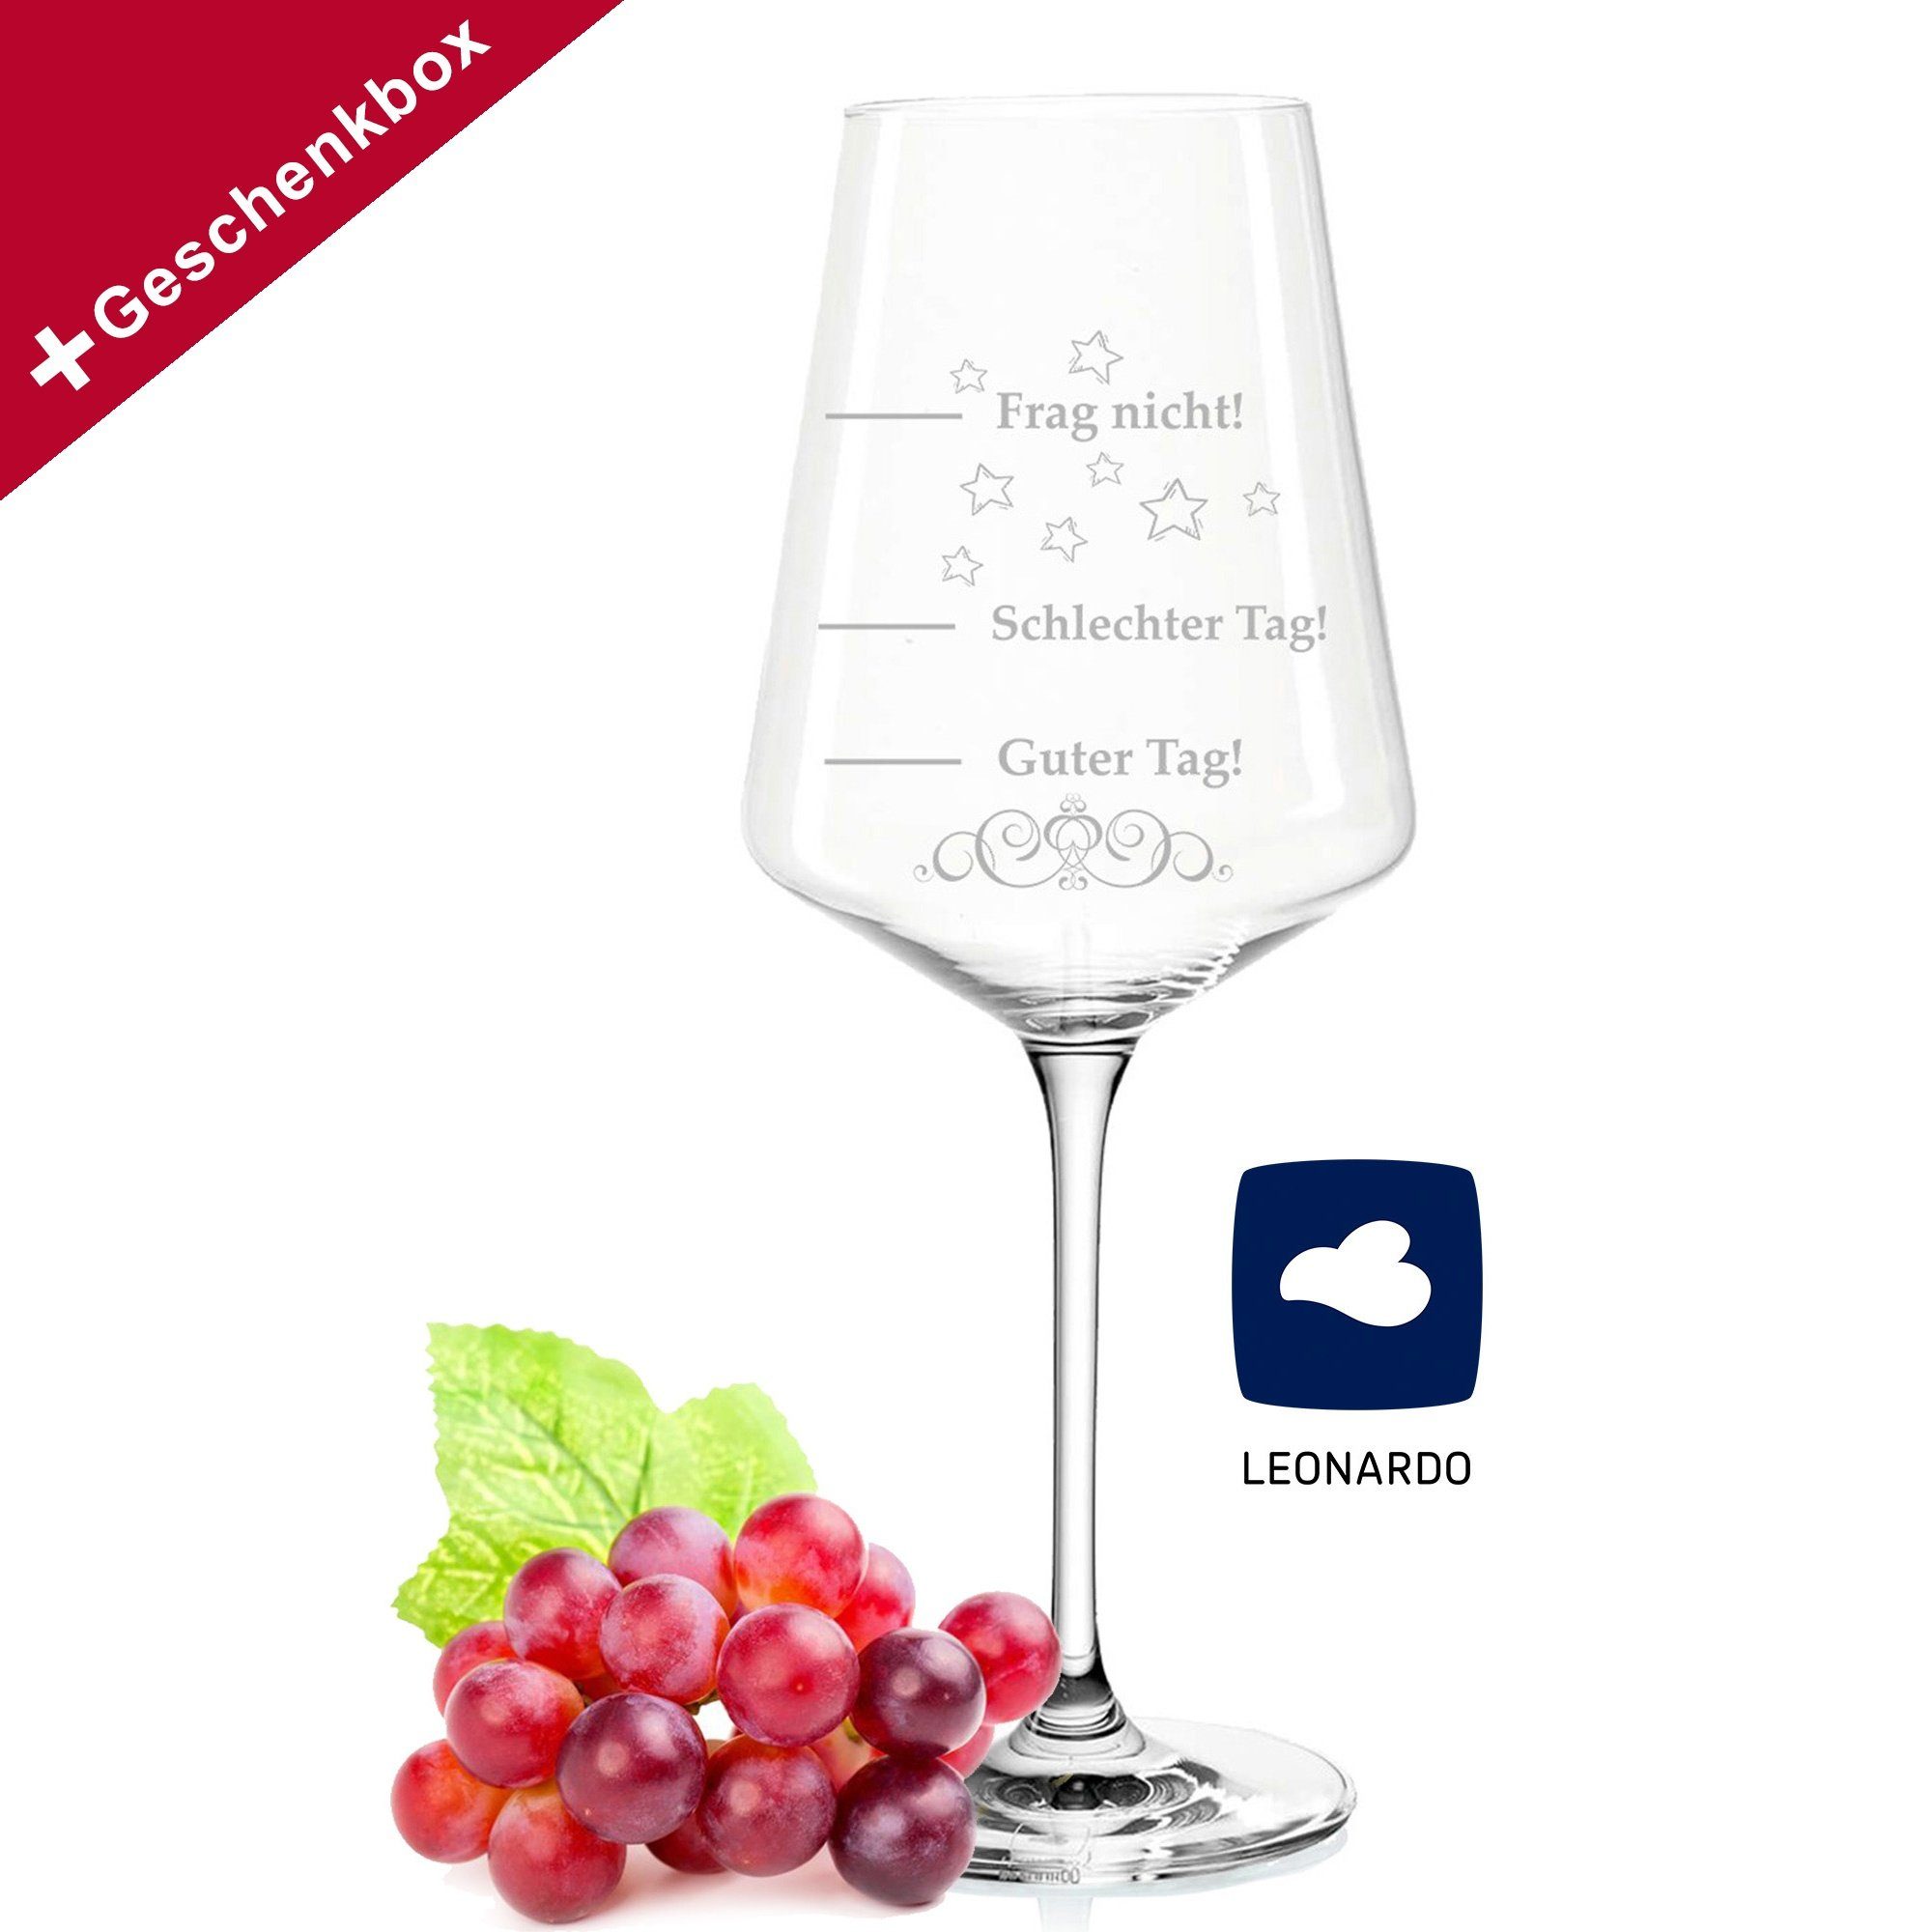 GRAVURZEILE Rotweinglas »Leonardo Puccini Weinglas - Schlechter Tag Guter  Tag - Frag nicht! - 750ml - Geburtstagsgeschenk - Lustiges Geschenk -  Originelles Geschenk - Stimmungsglas«, Glas online kaufen | OTTO